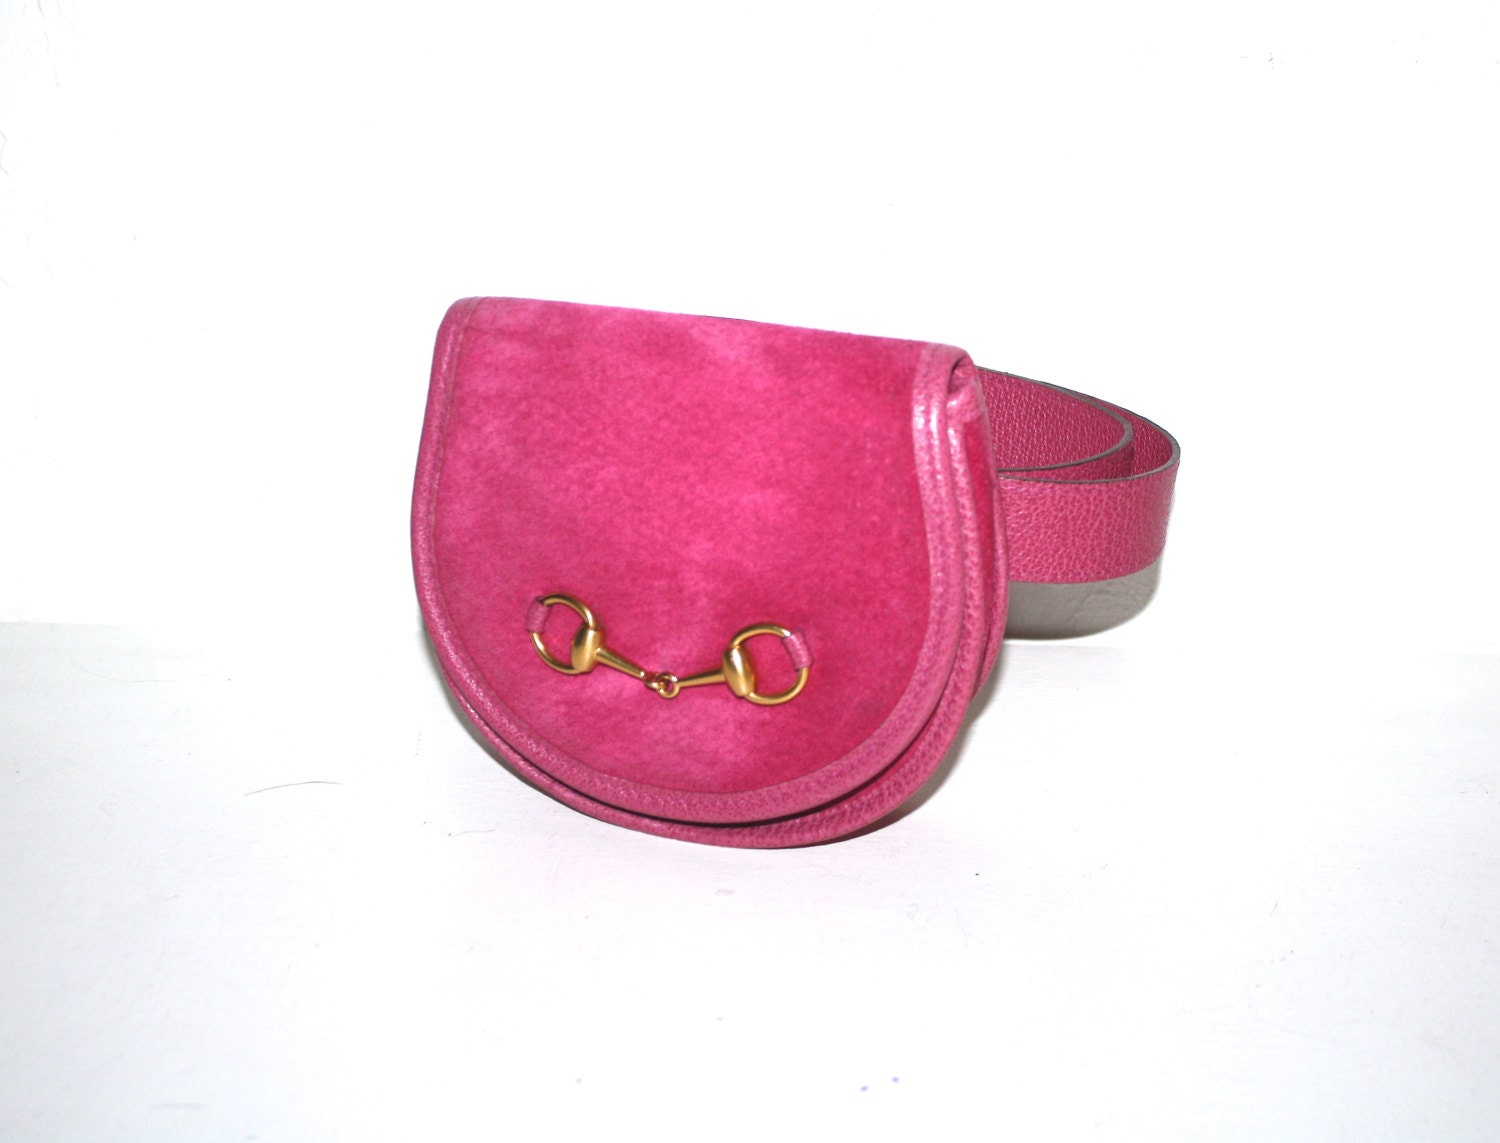 GUCCI Vintage Belt Bag Hot Pink Suede Leather Fanny Pack